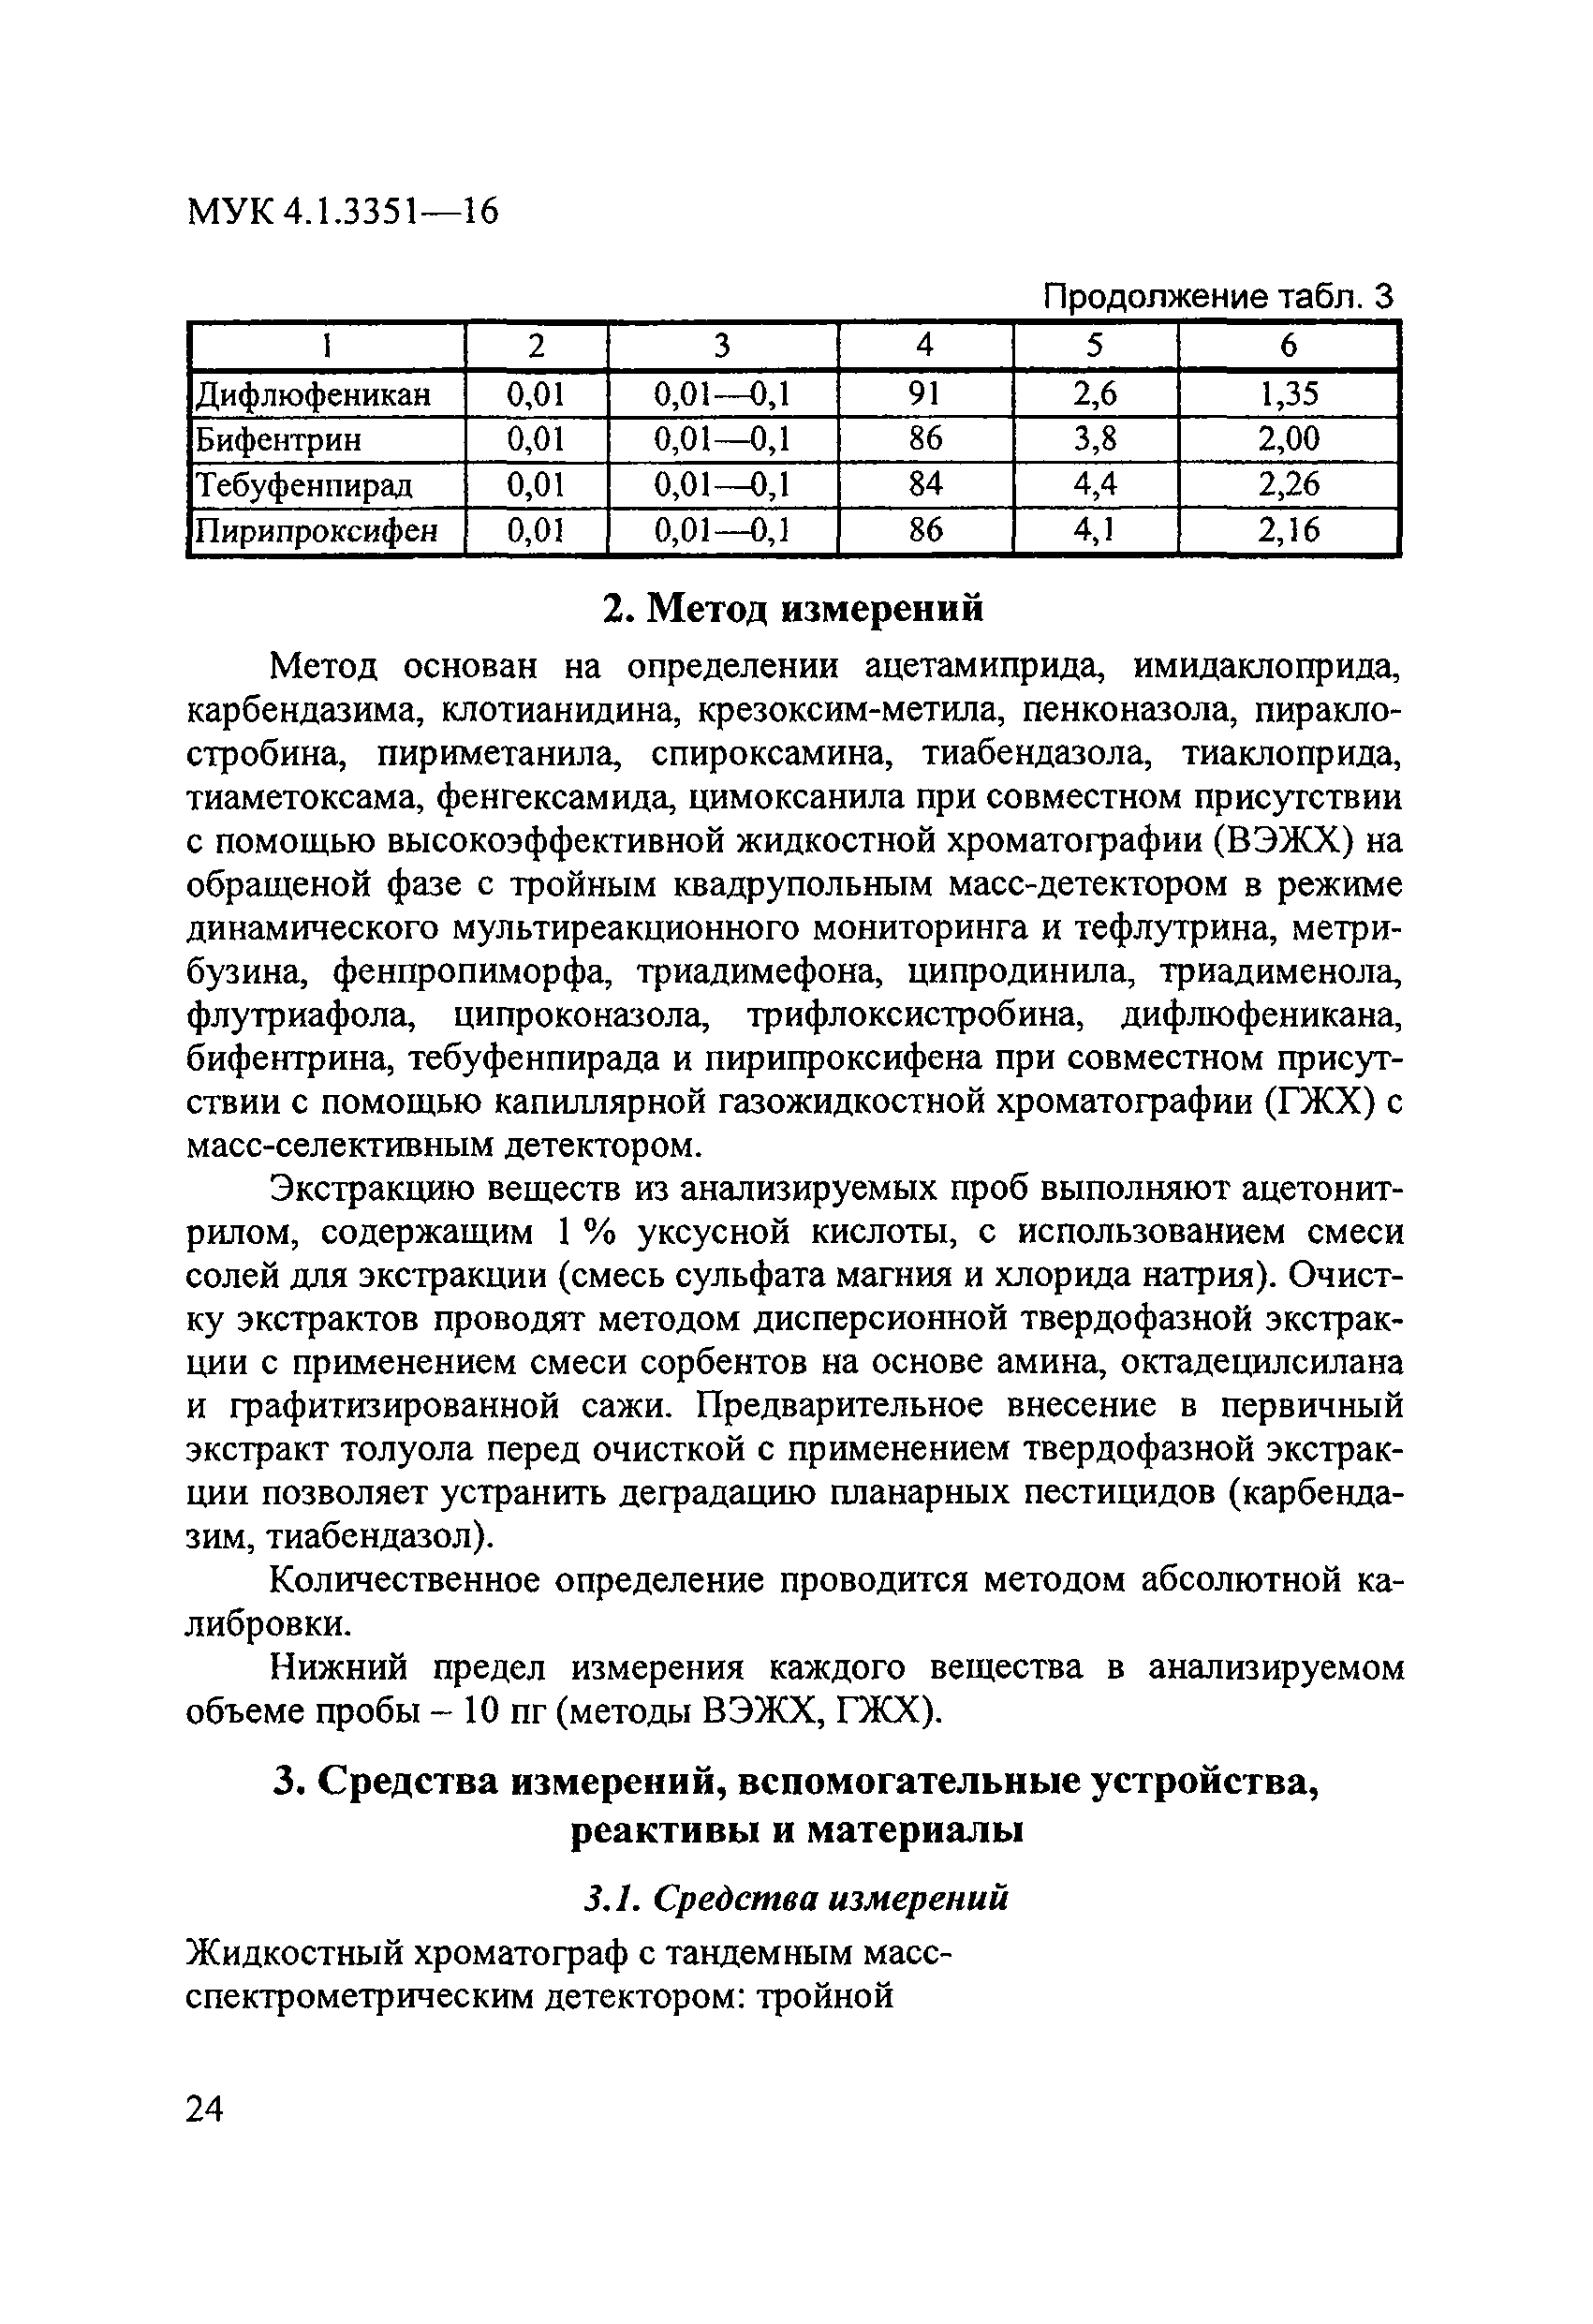 МУК 4.1.3351-16